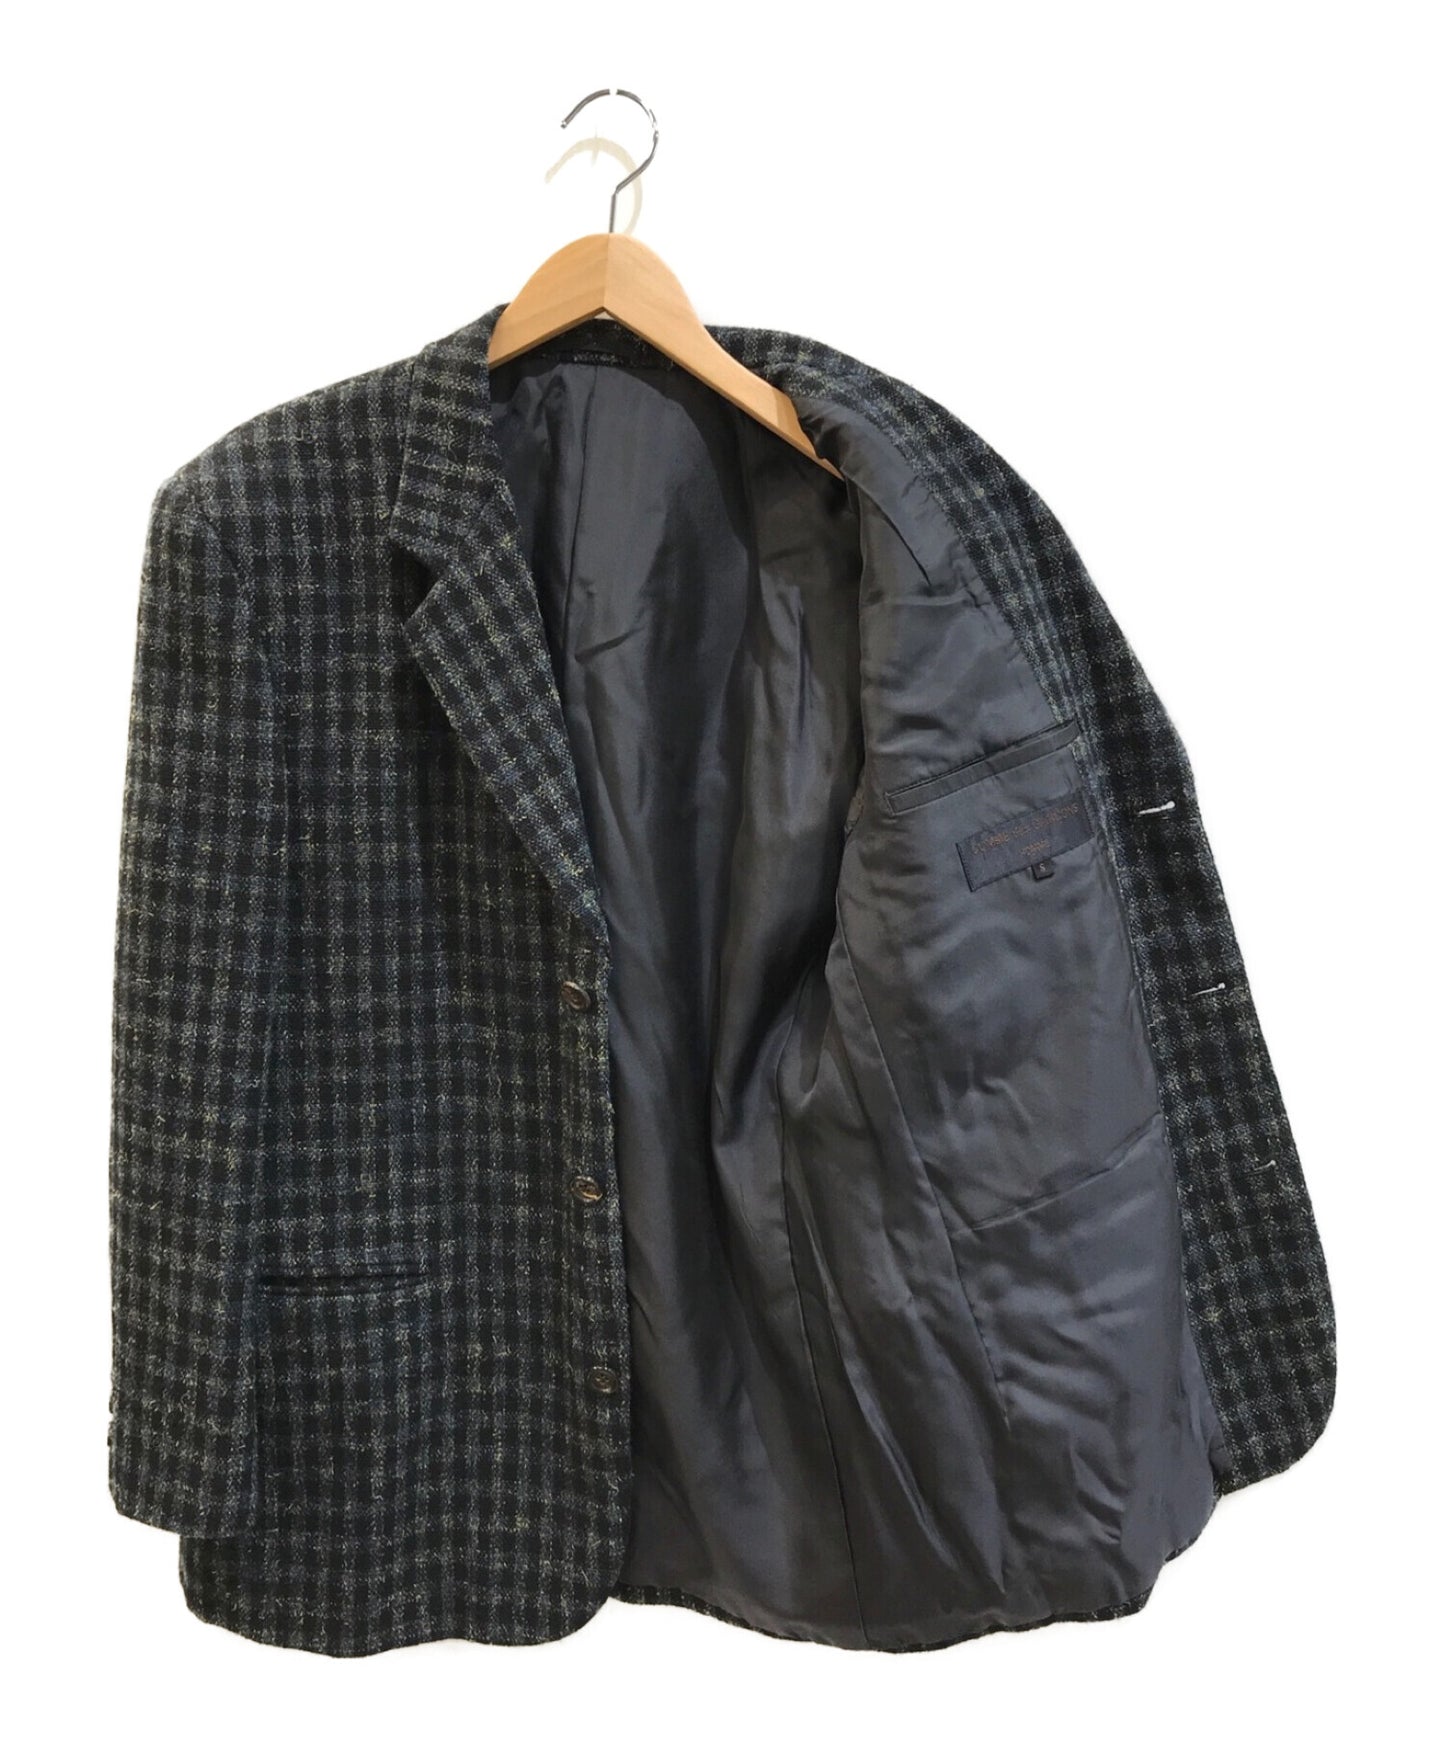 Comme des Garcons Homme [Old] 90 년대 트위드 체크 맞춤 재킷 HJ-08015S